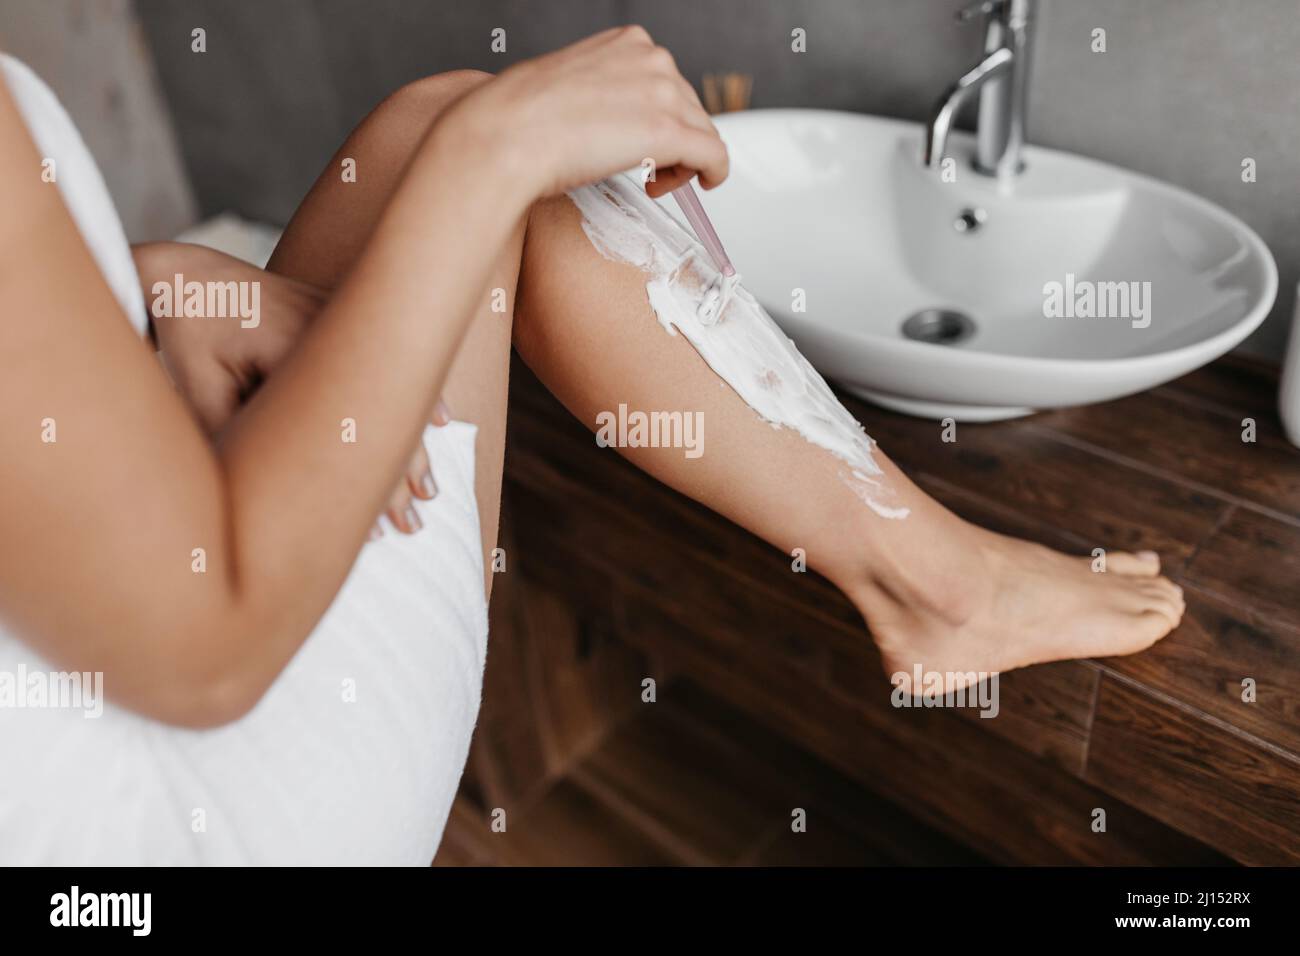 Femme non reconnaissable se raser les jambes dans la salle de bains, à l'aide d'un rasoir de sécurité, enlever les cheveux, faire l'épilation, la récolte, gros plan Banque D'Images